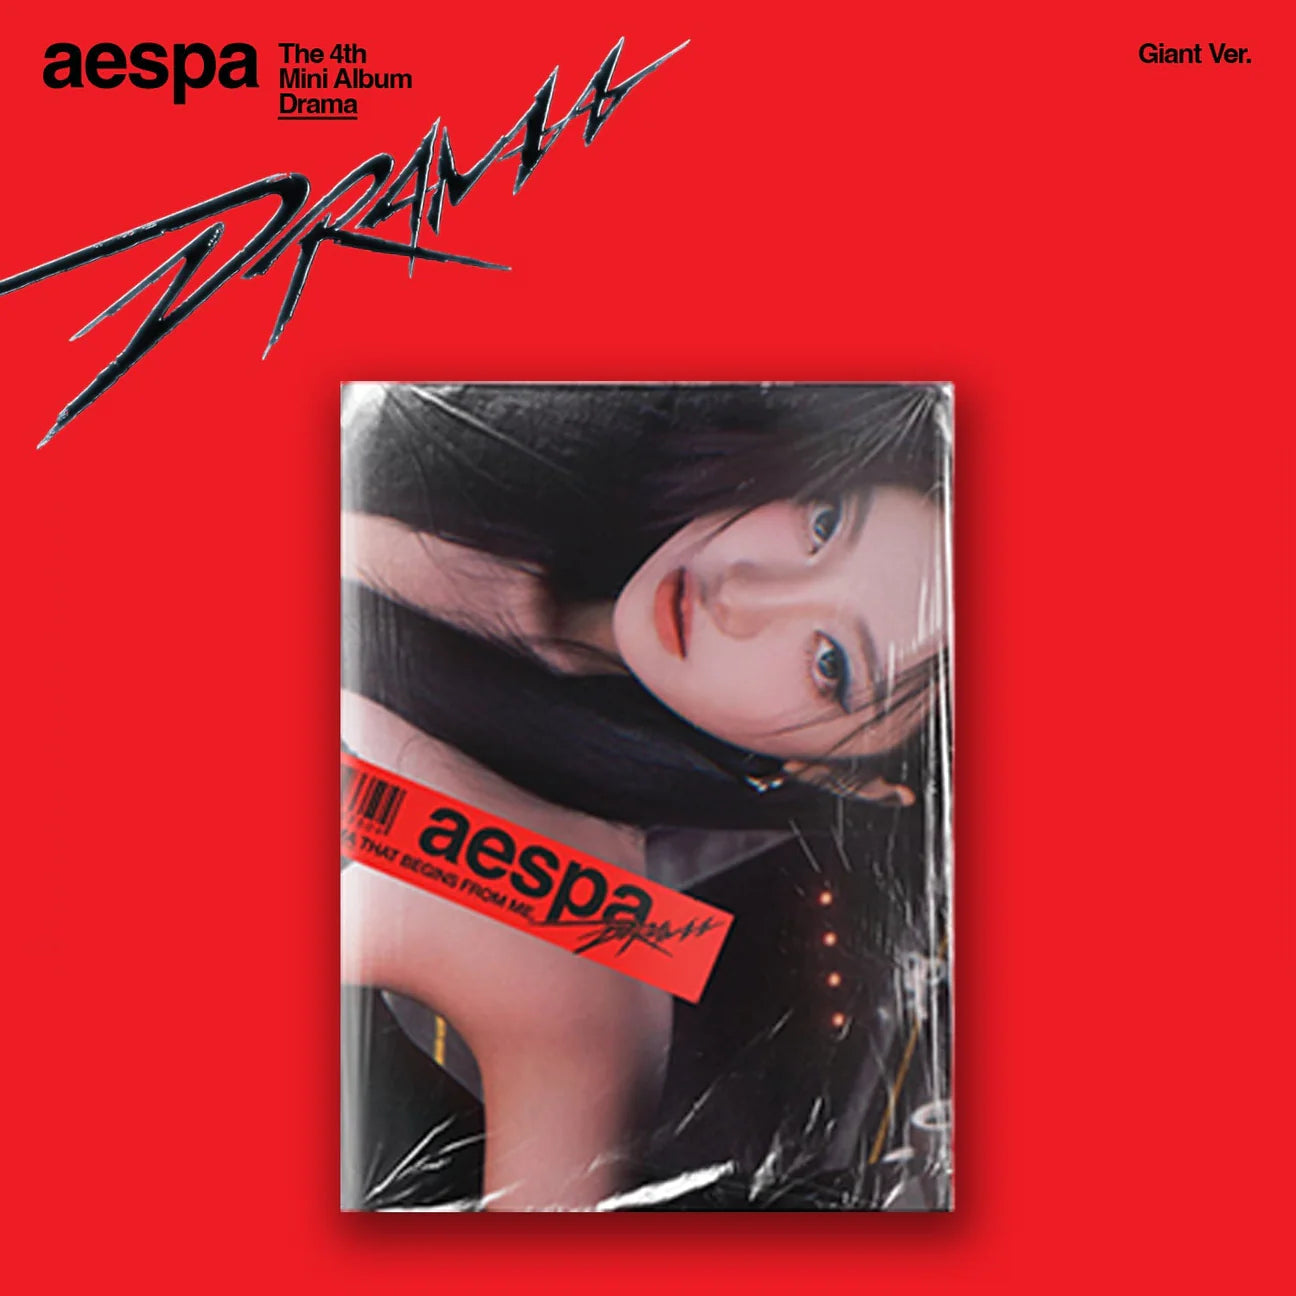 AESPA - 4TH MINI ALBUM [DRAMA] (GIANT VER.) (4 VERSIONS)